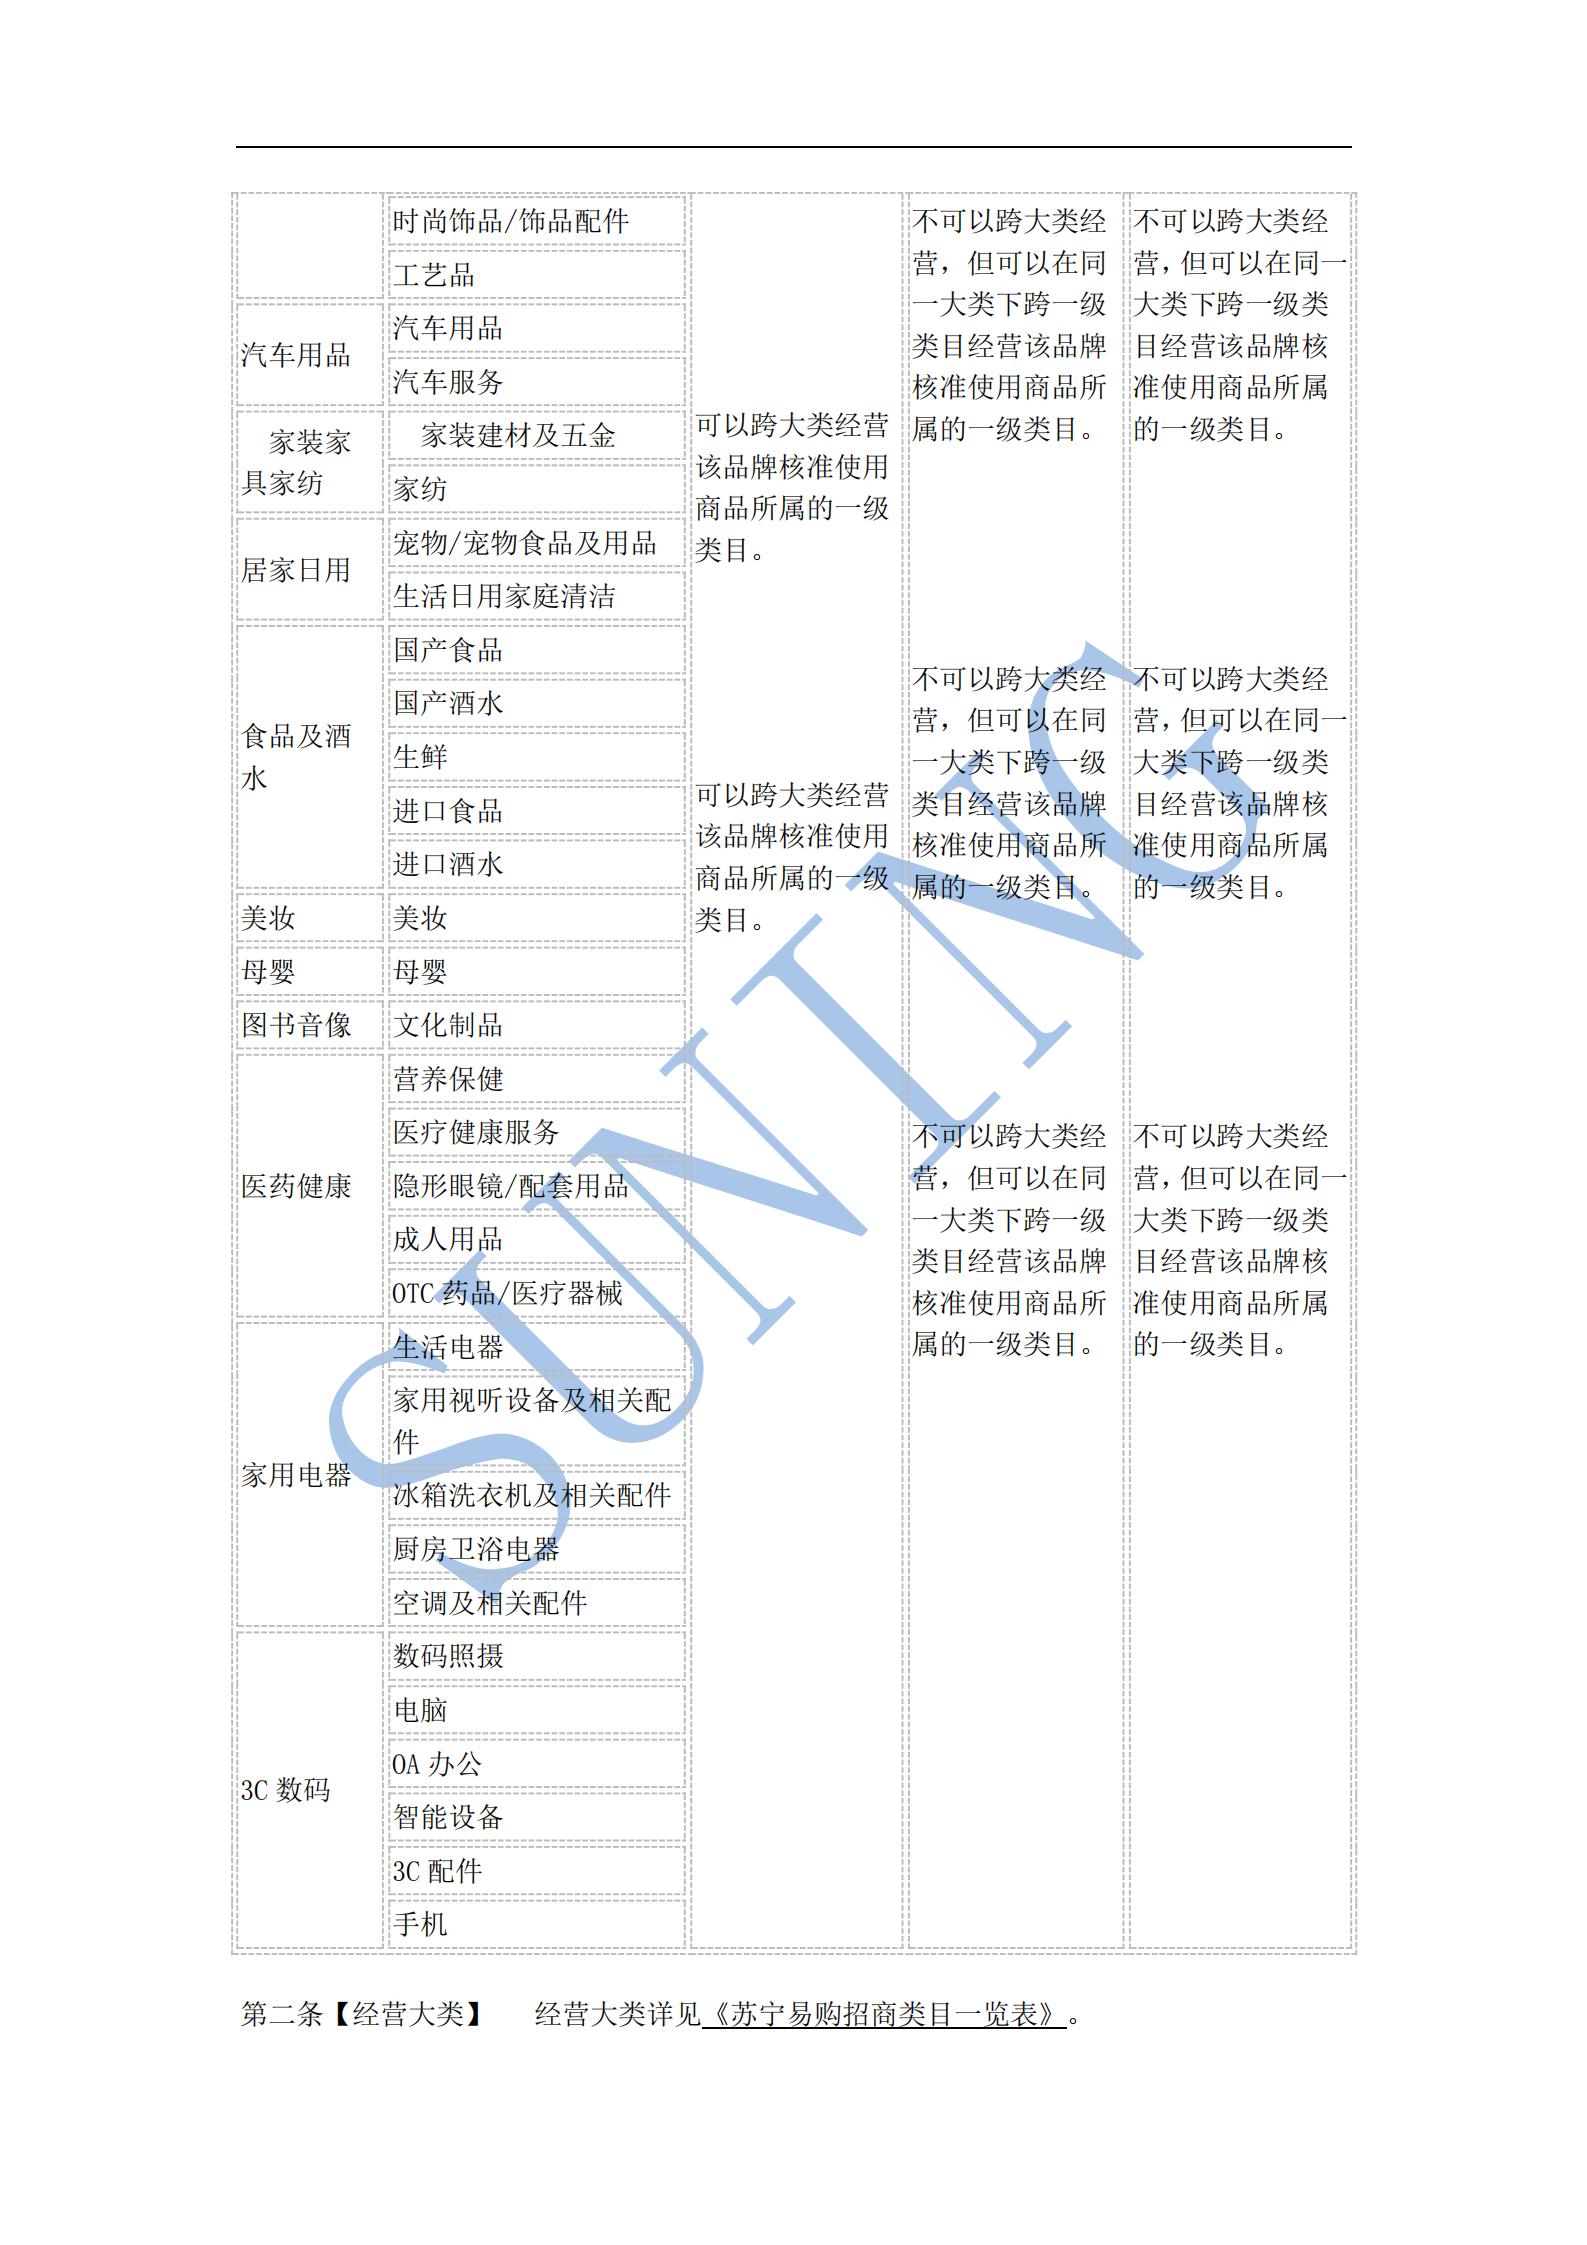 苏宁易购跨类目经营一览表_01.jpg